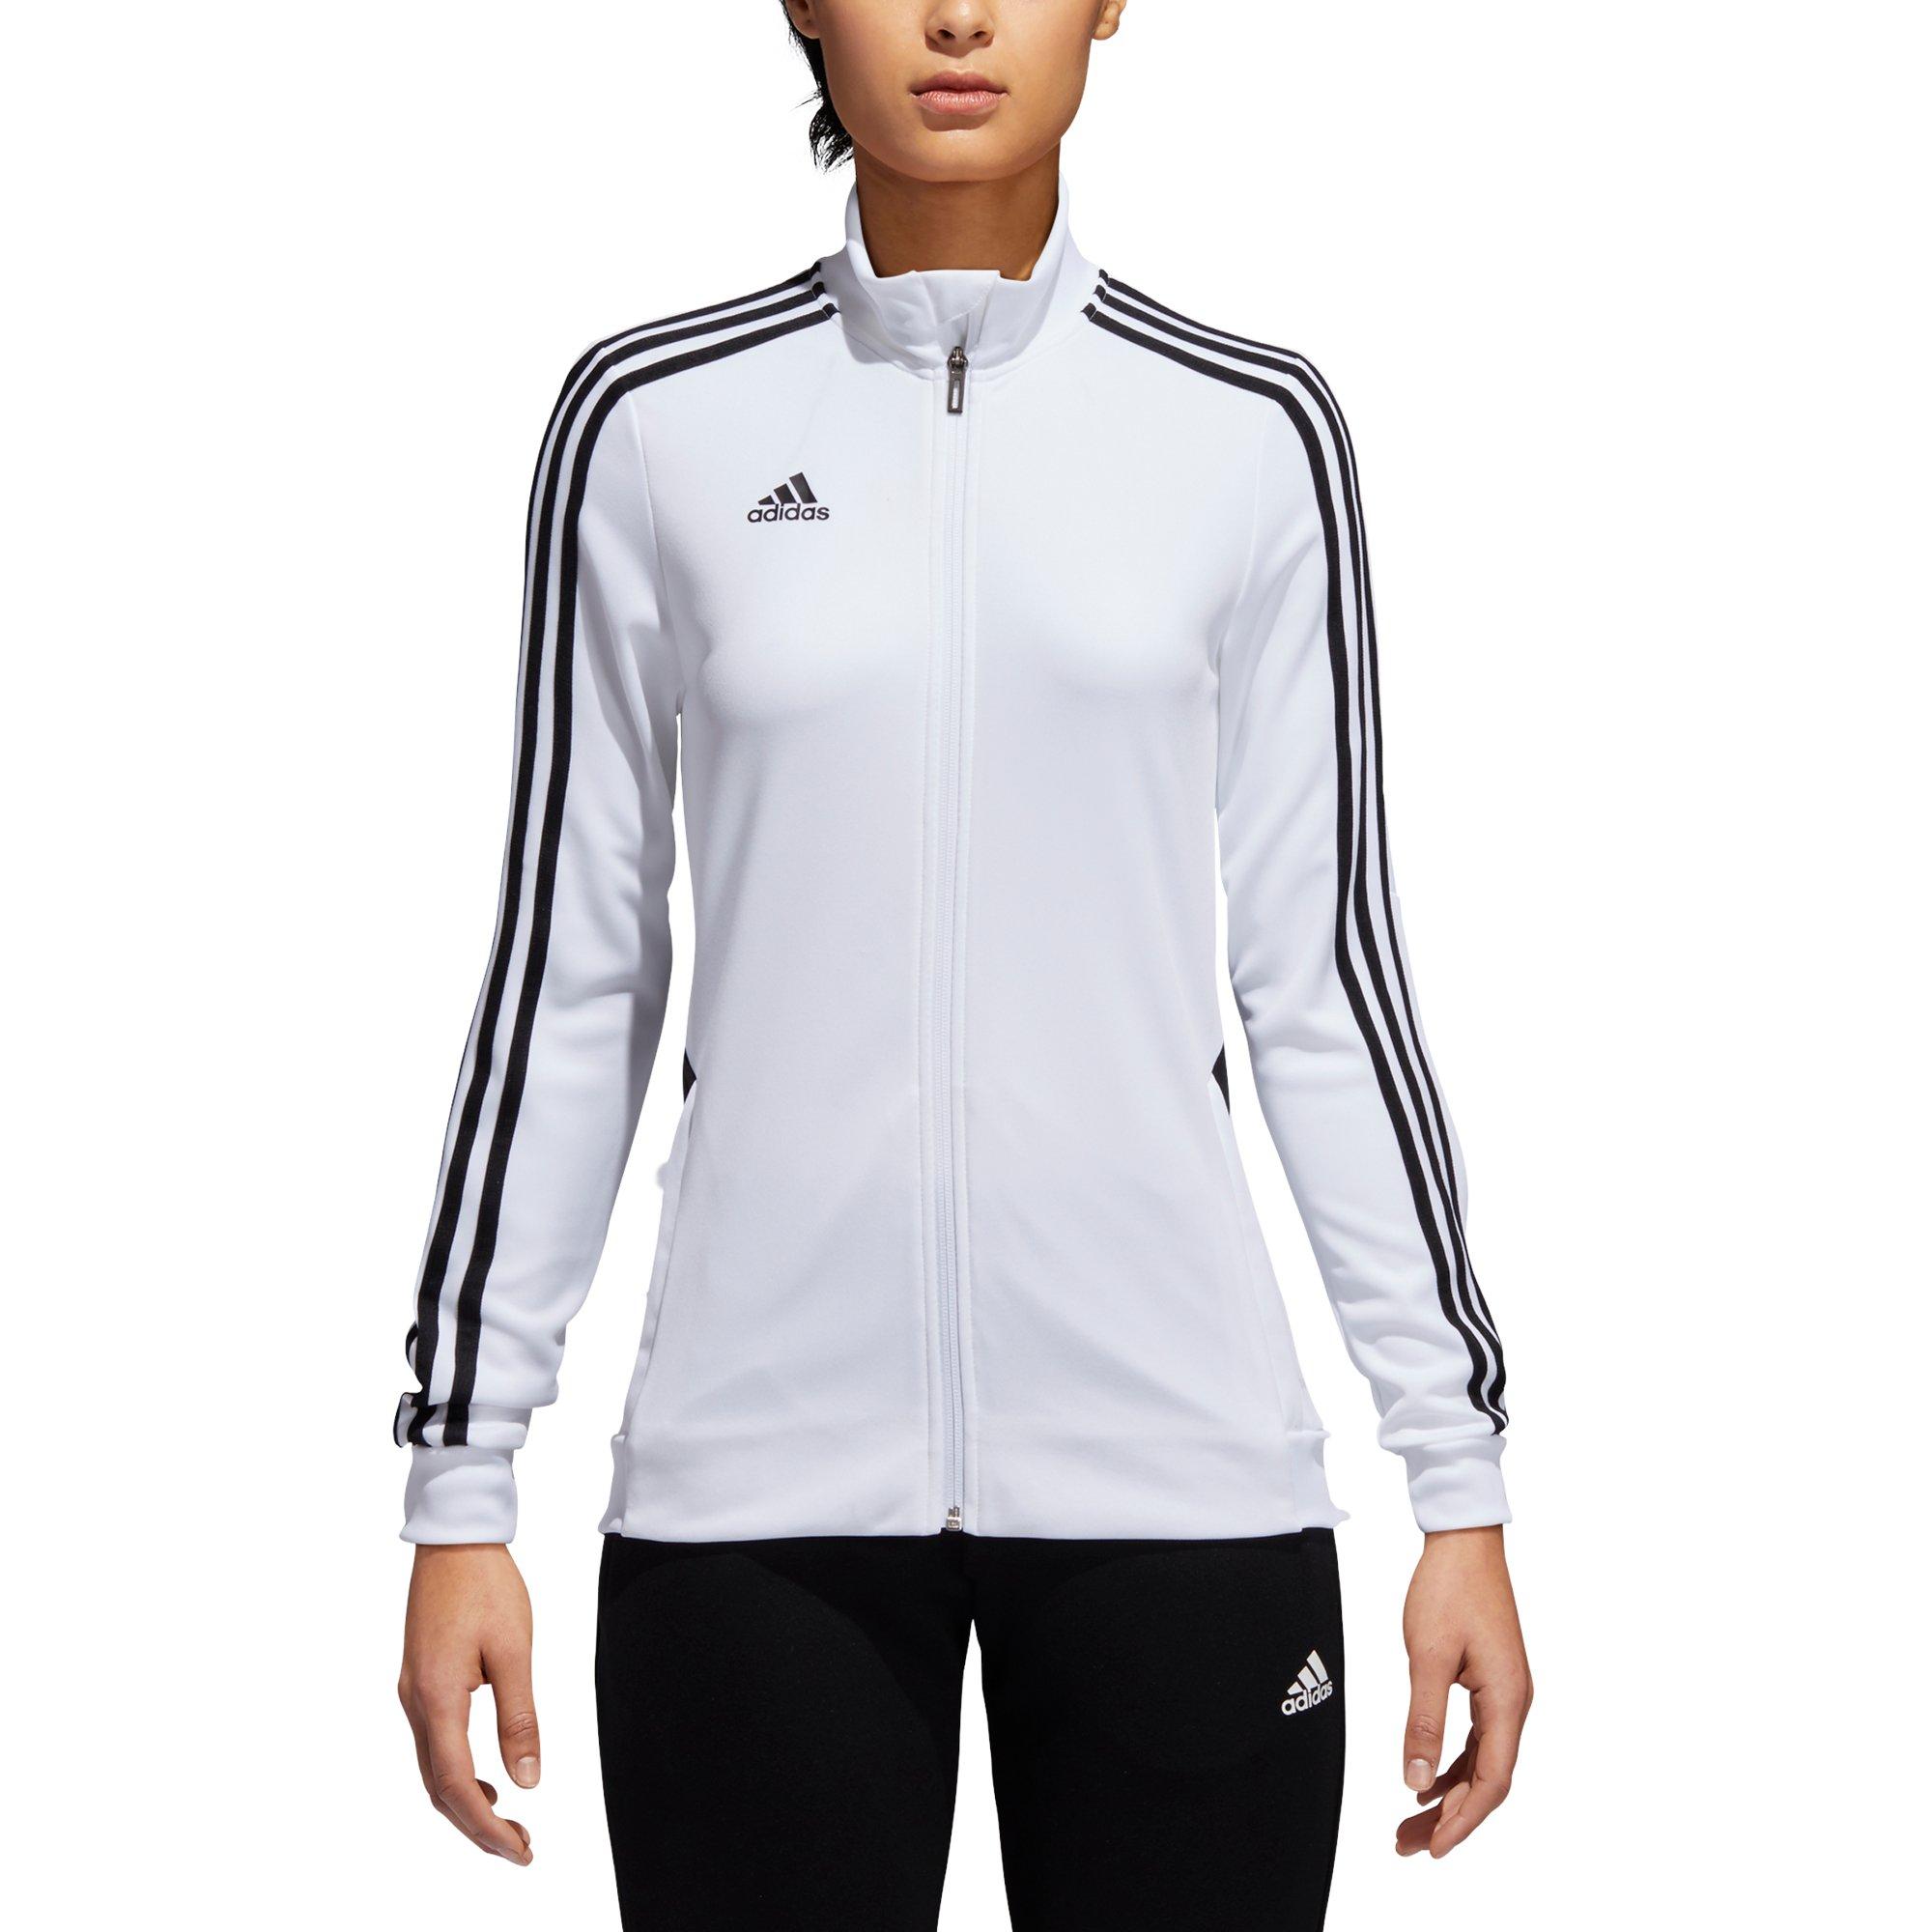 adidas white track jacket women's